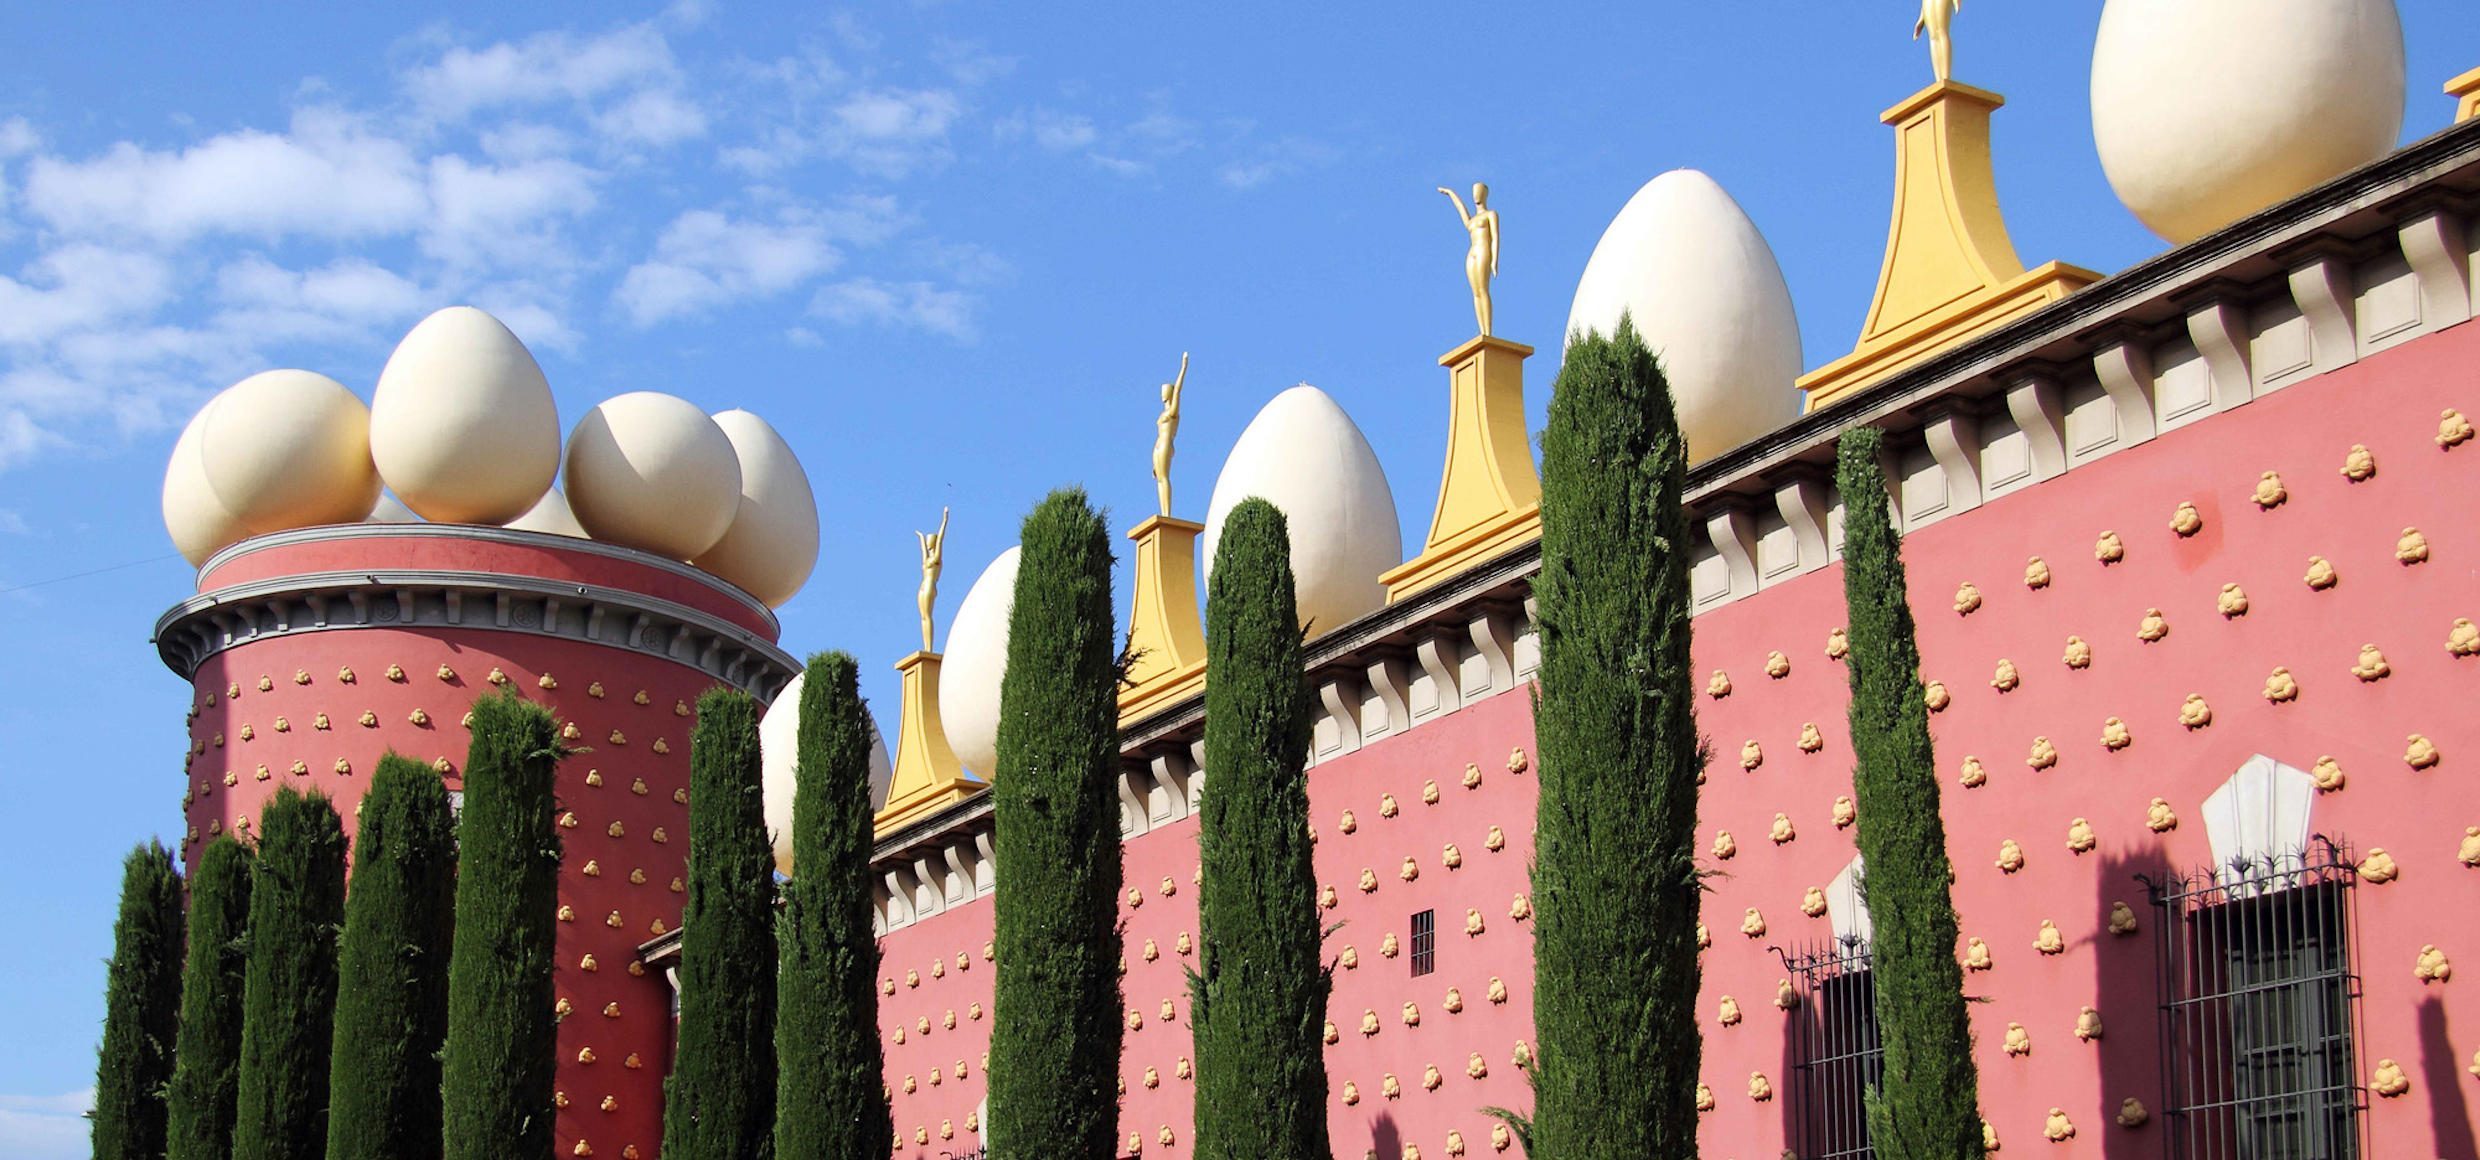 Teatre-Museu Dalí a Figueres